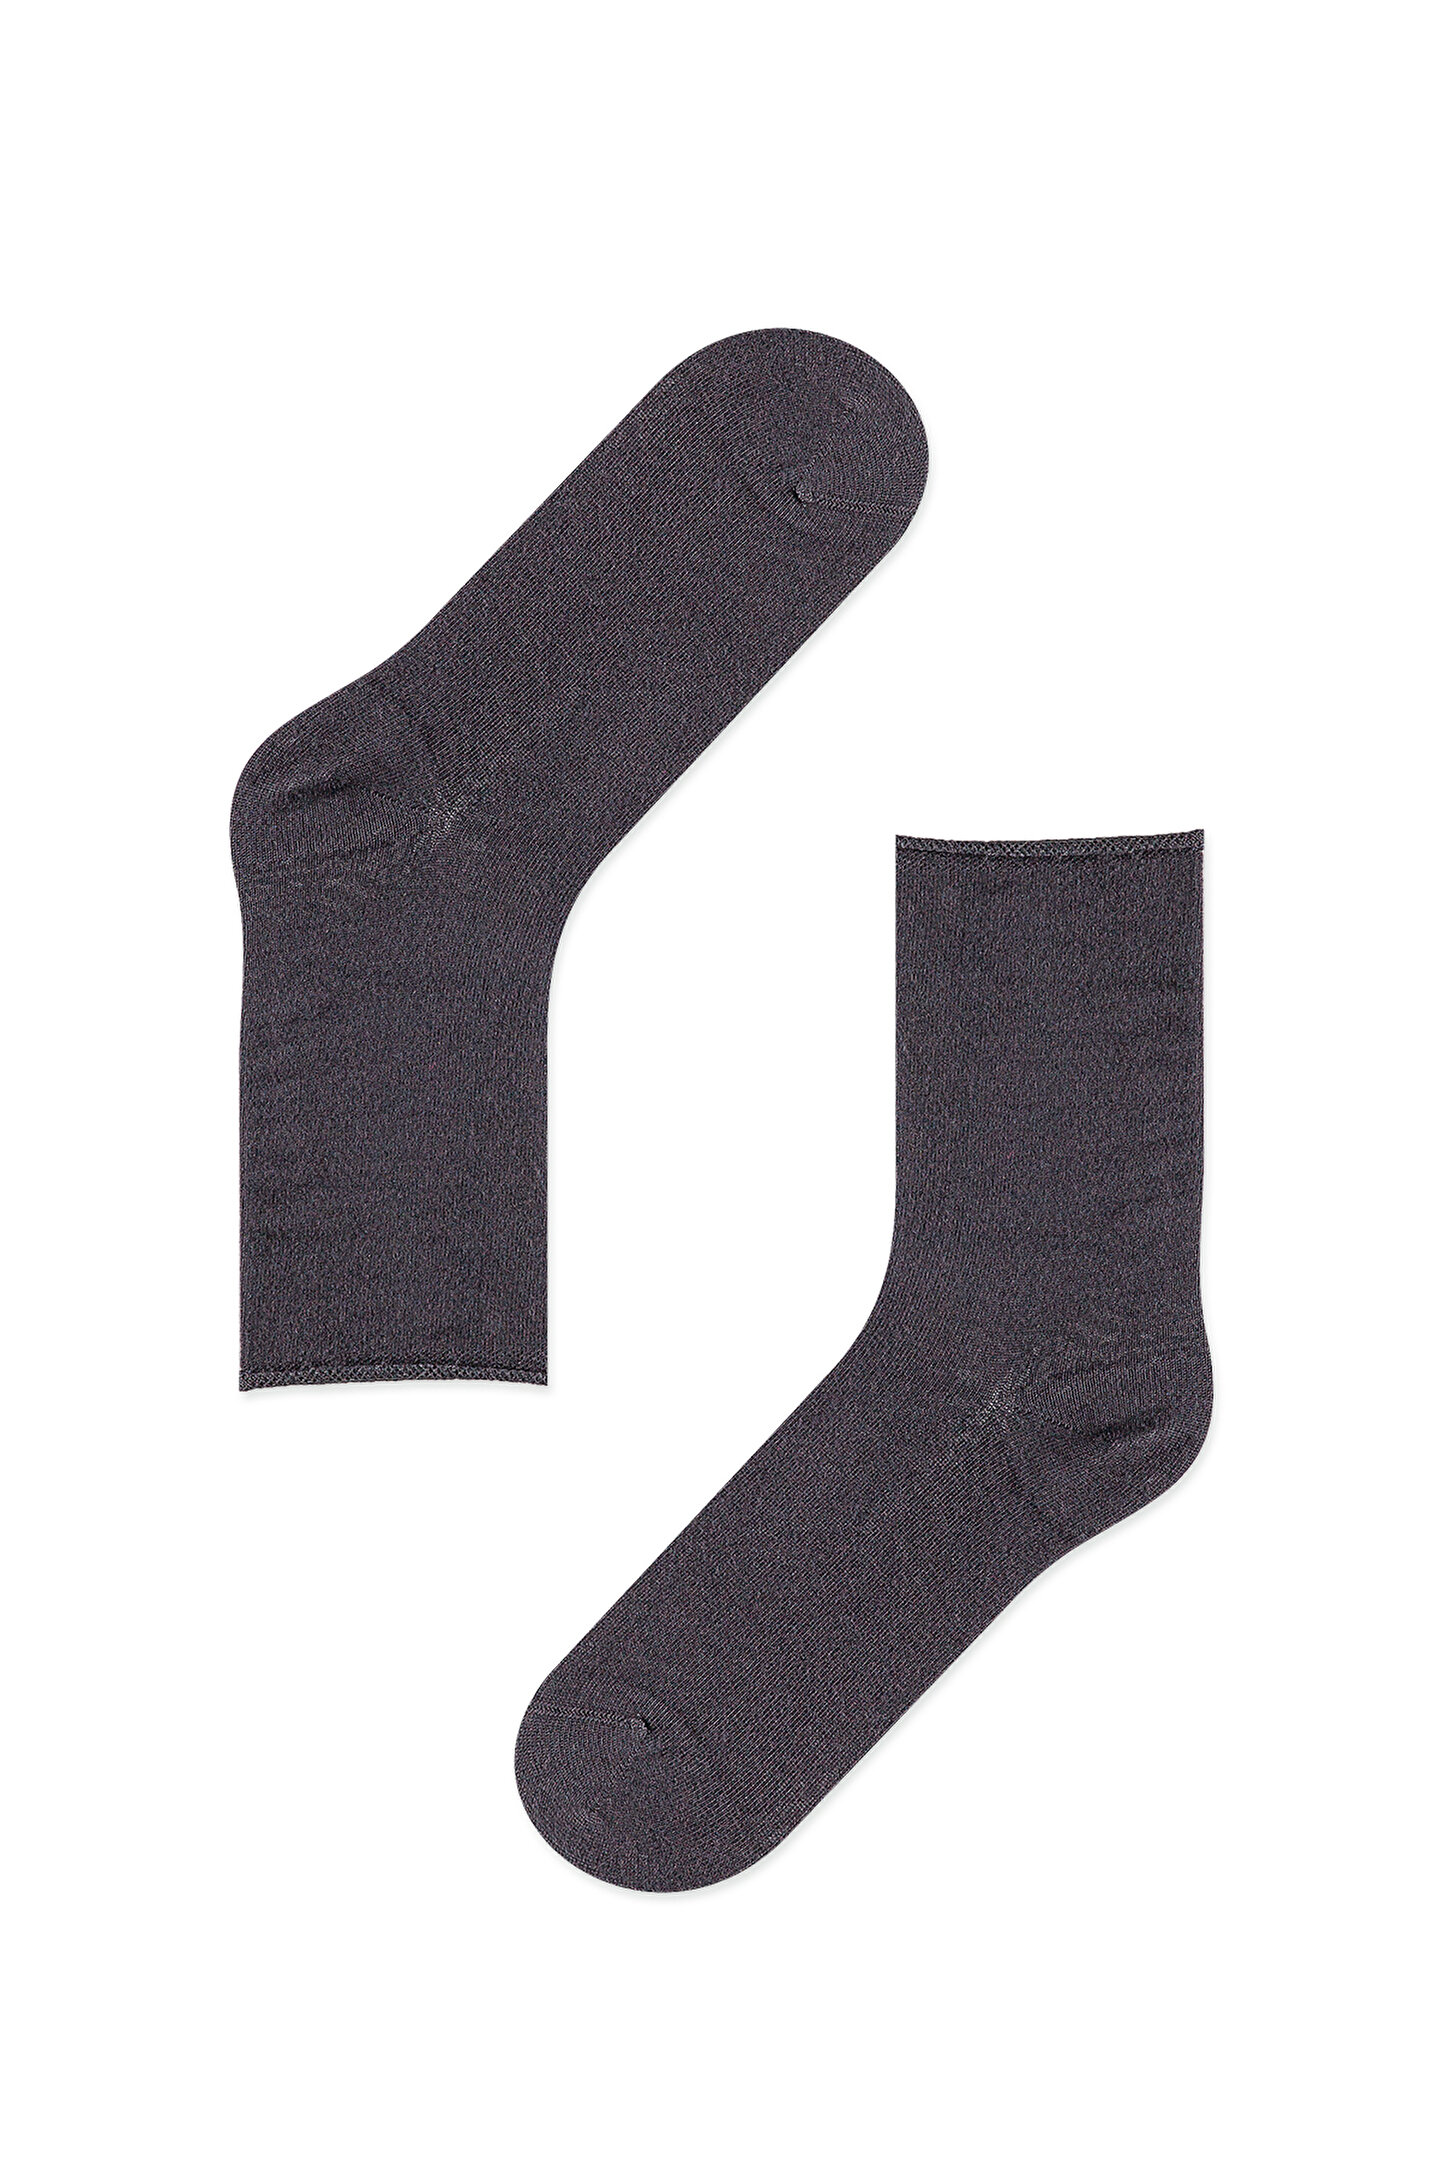 Soft Socks - 2 in 1 - 1